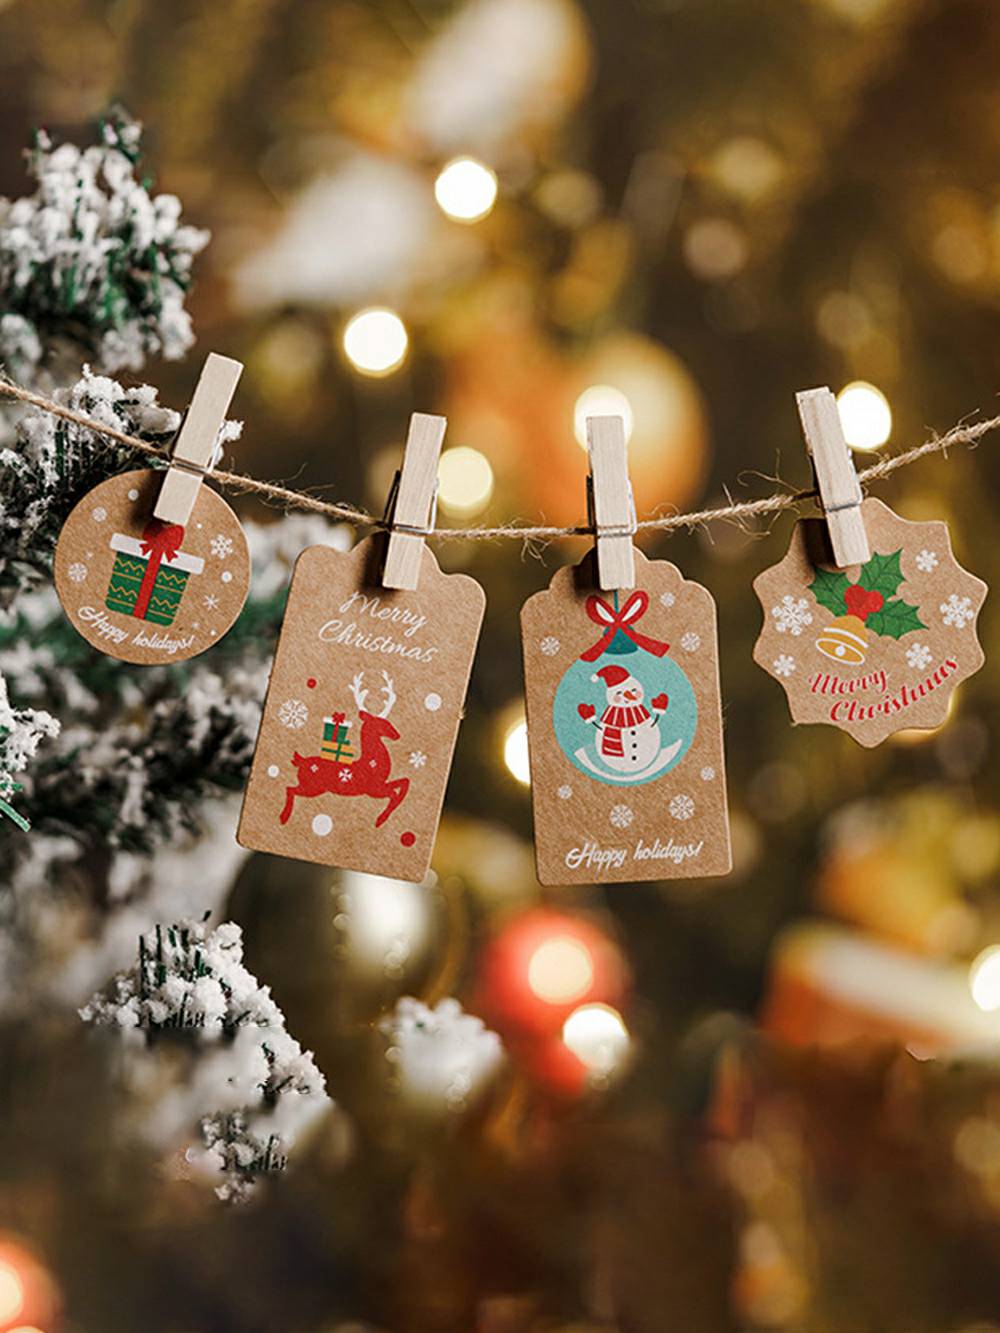 Etichette per decorazioni natalizie - Carta regali per le feste